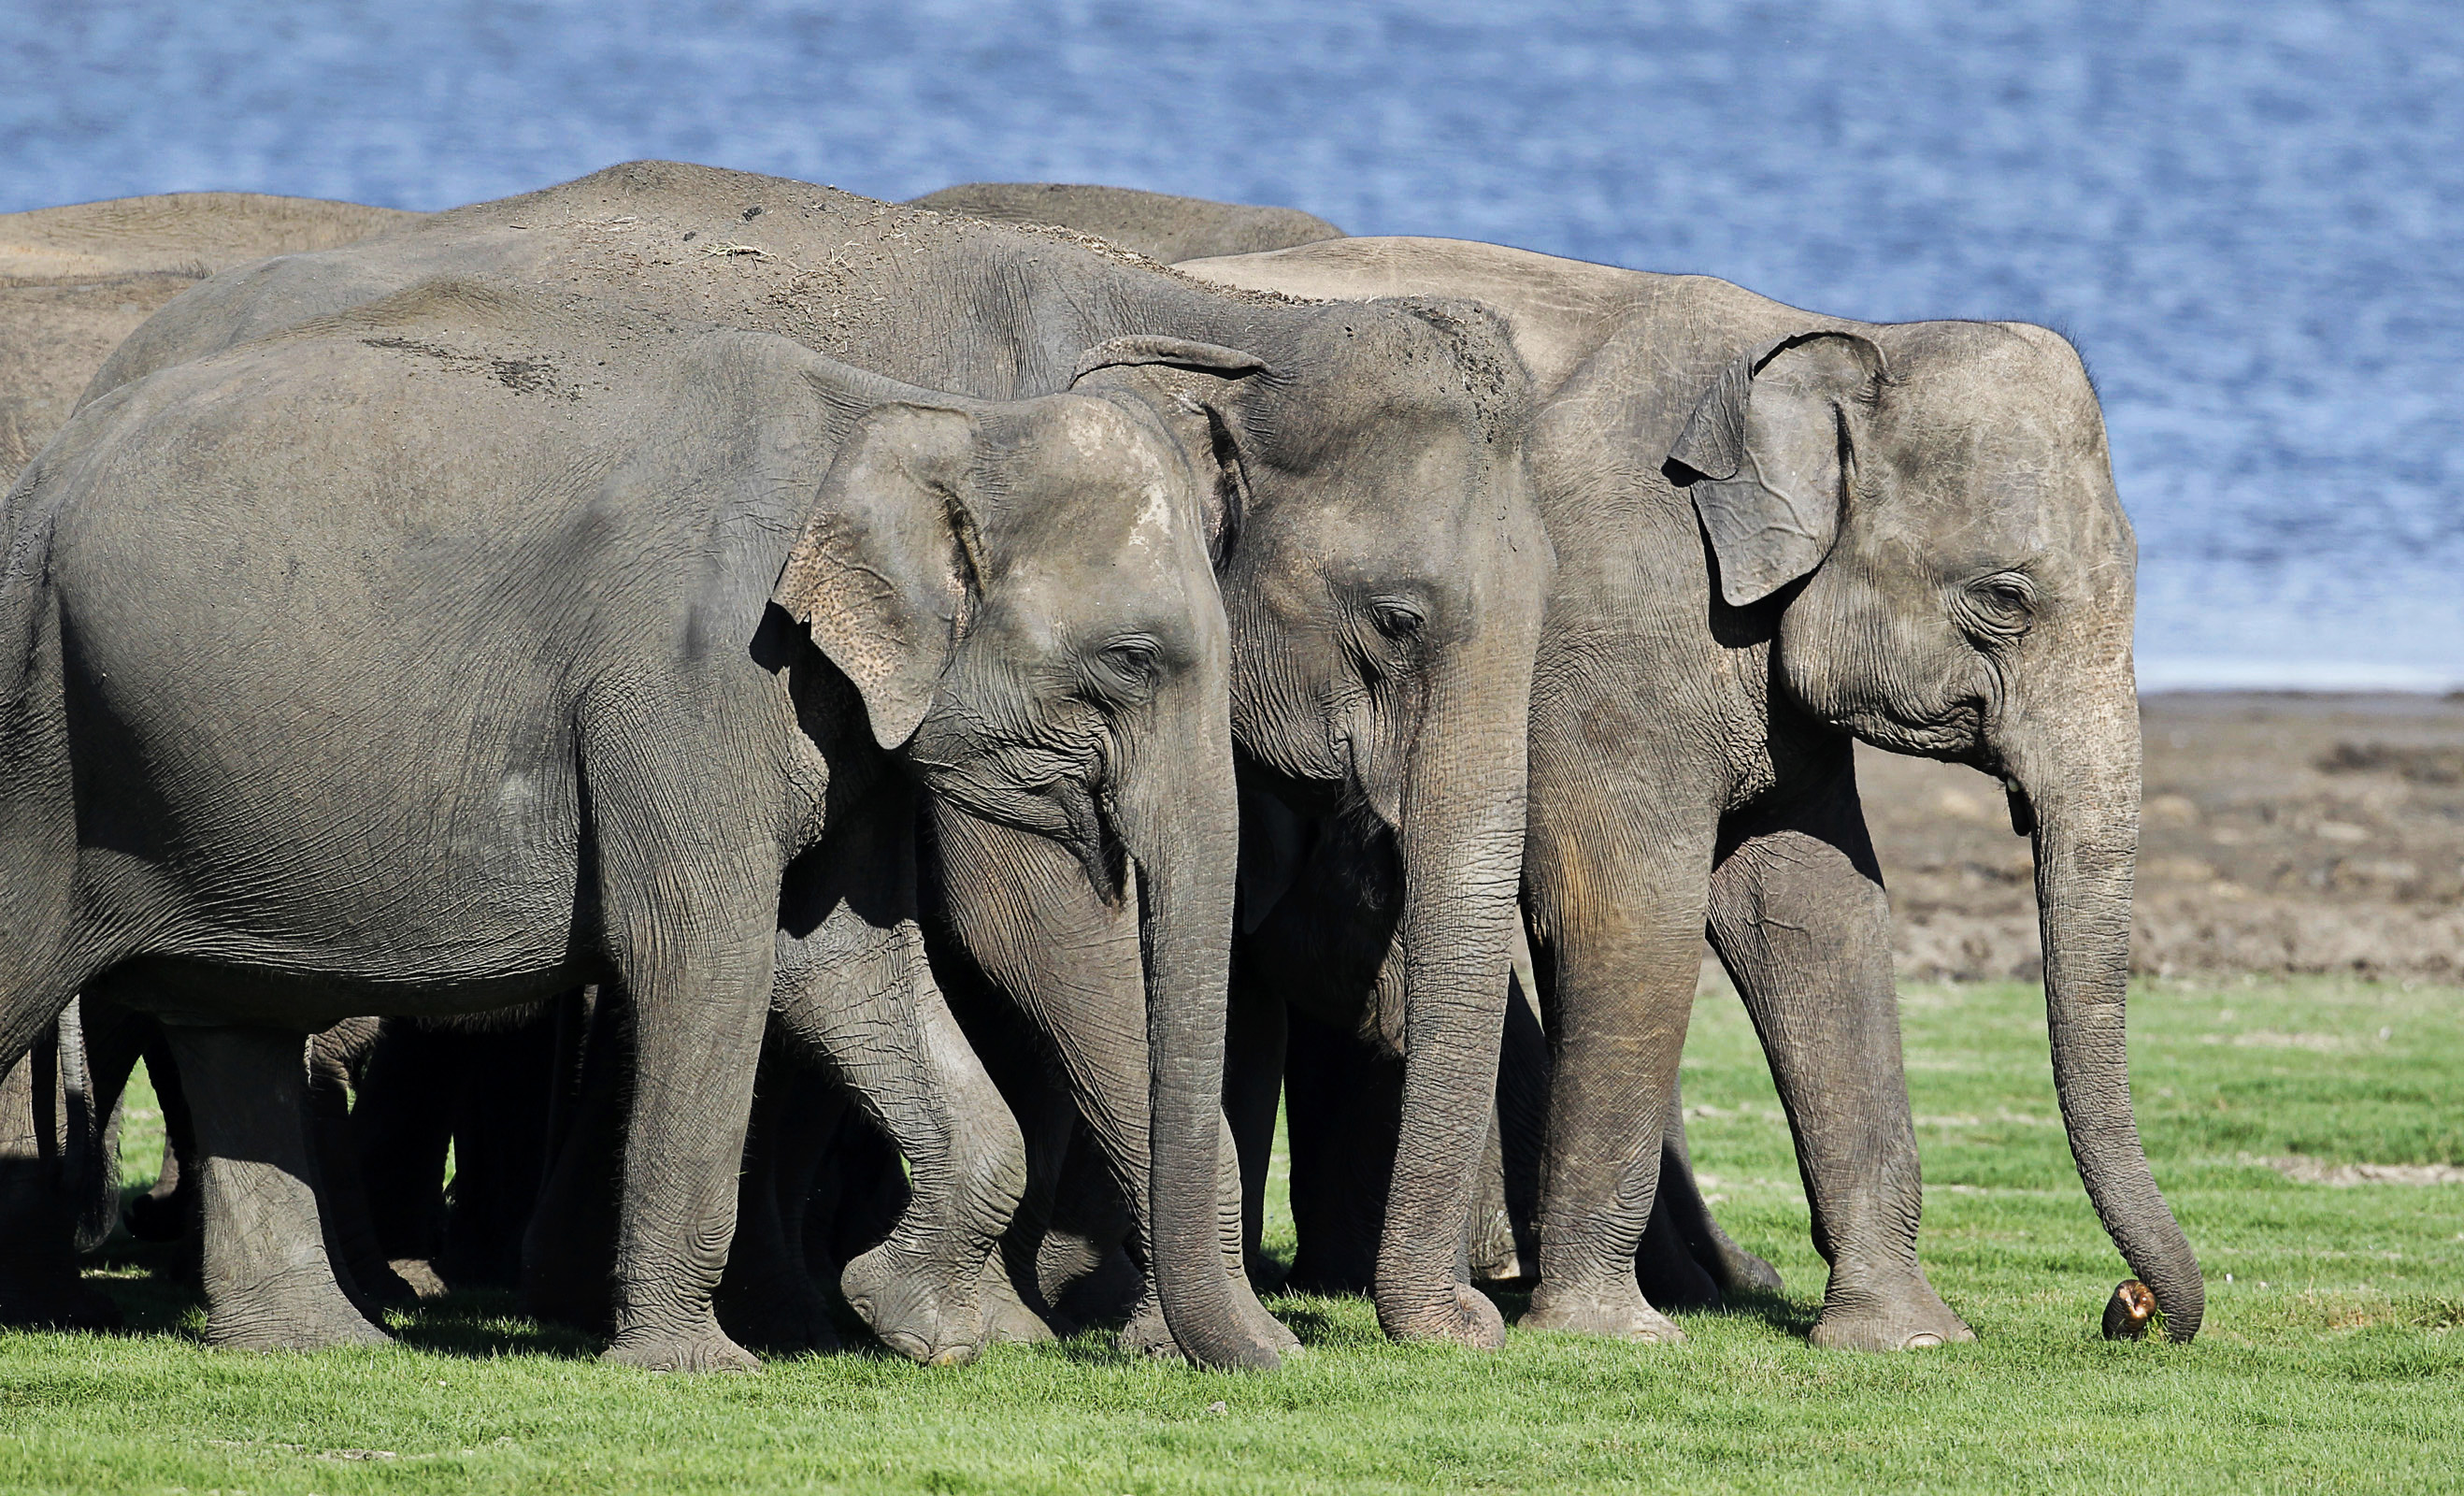 Elefanter är växtätare och konsumerar 100 till 150 kg växtmaterial per dag. Deras föda består av gräs, löv, frukter och små grenar och kvistar.